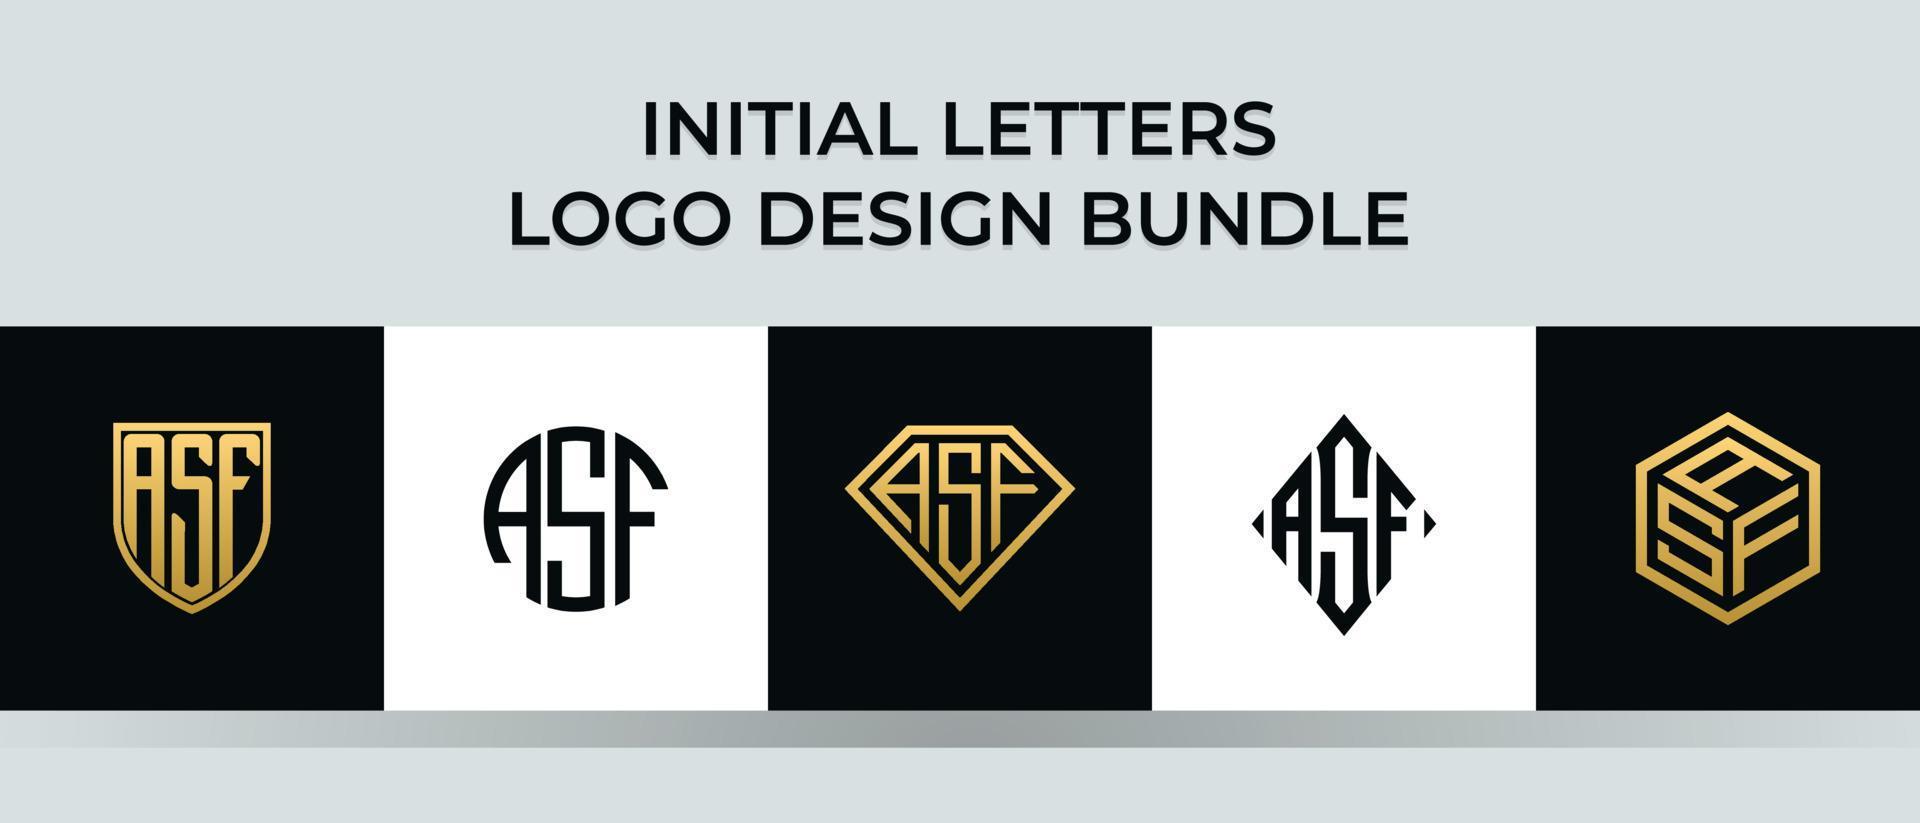 letras iniciales asf logo diseños paquete vector